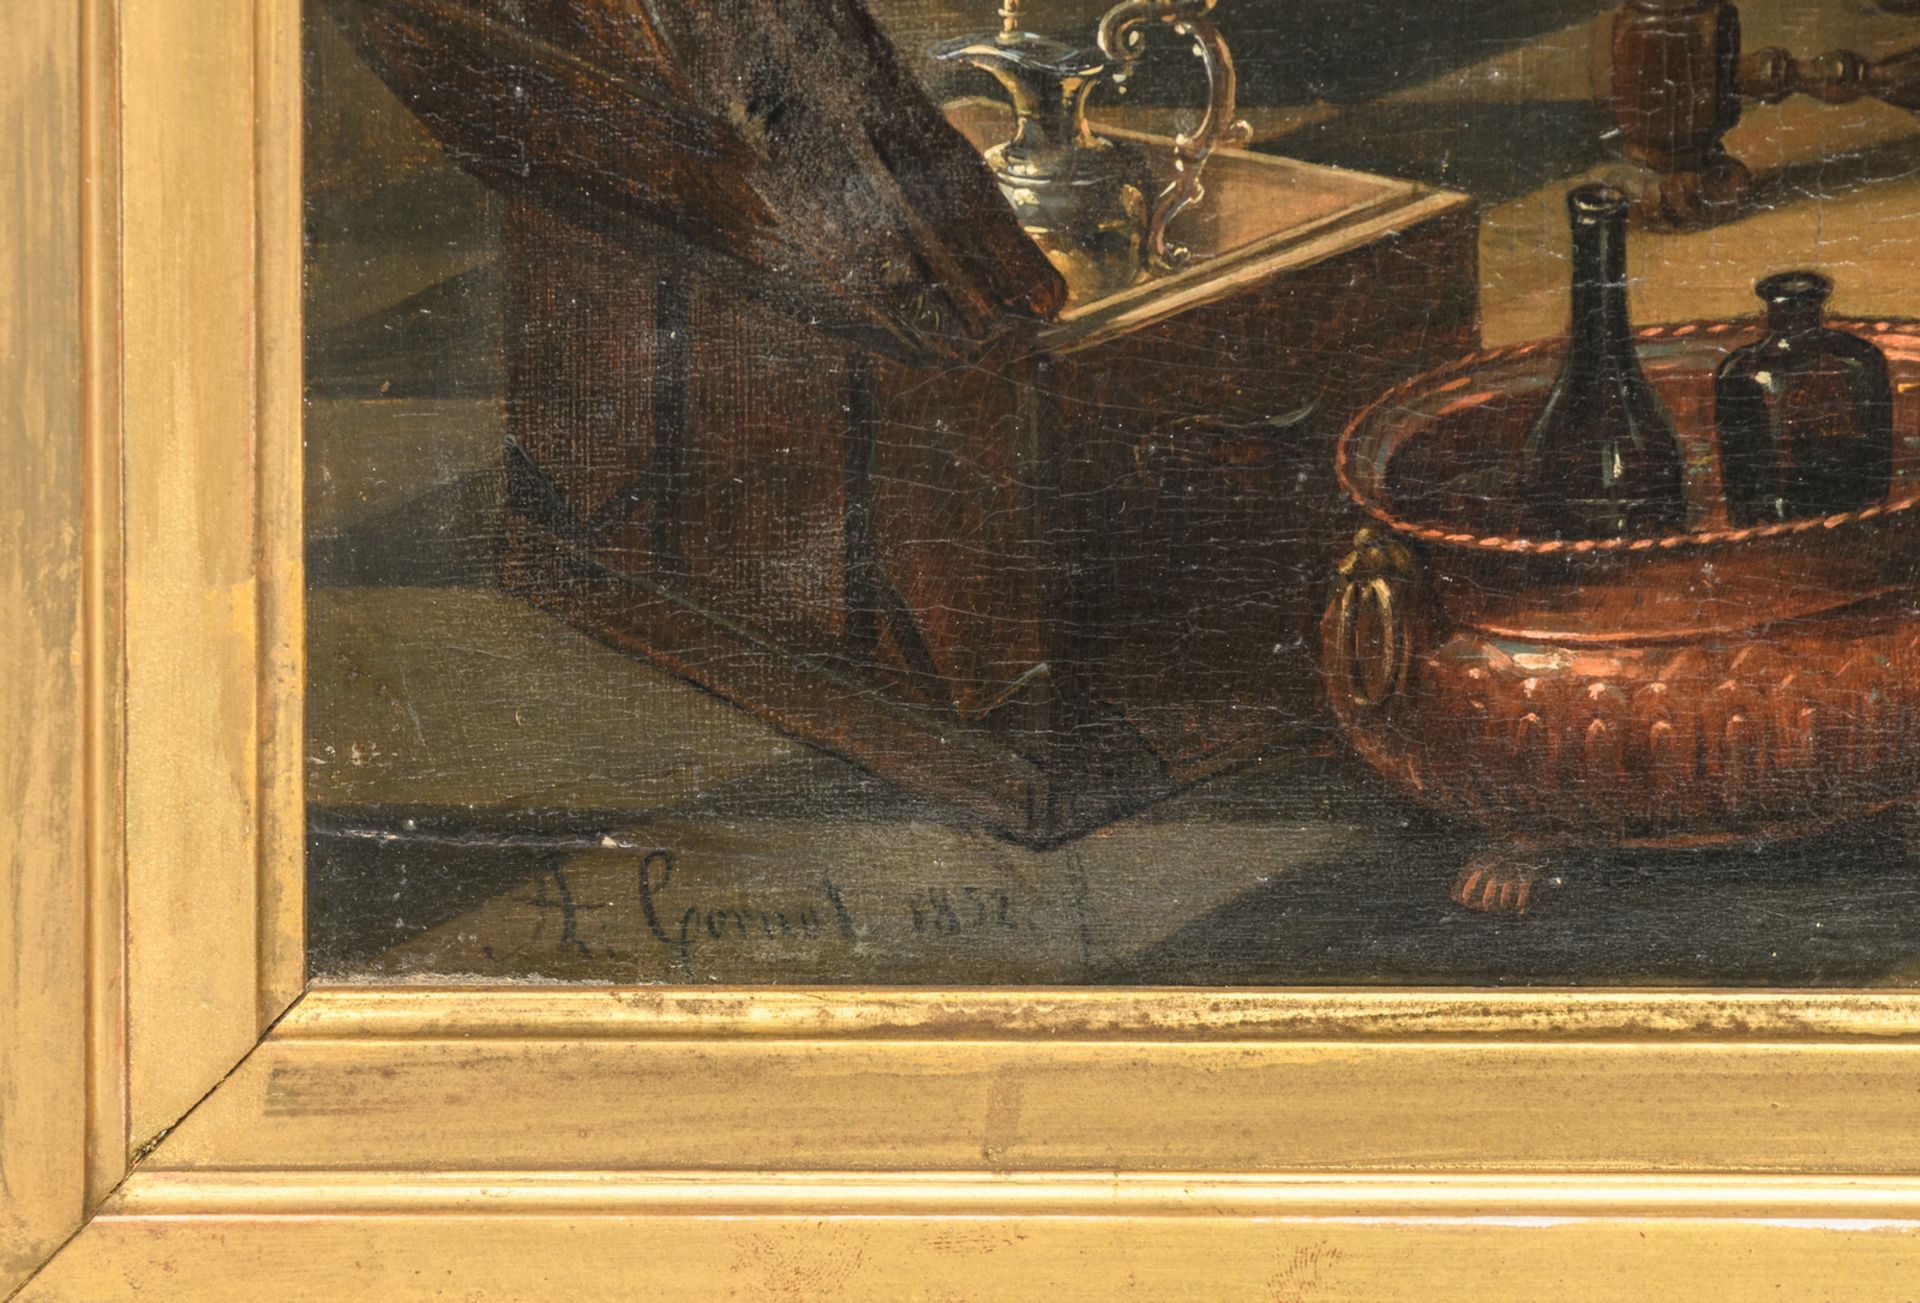 Cornet A., 'Chez l'usurier', oil on panel, dated 1852, 55,5 x 63,5 cm - Bild 4 aus 5